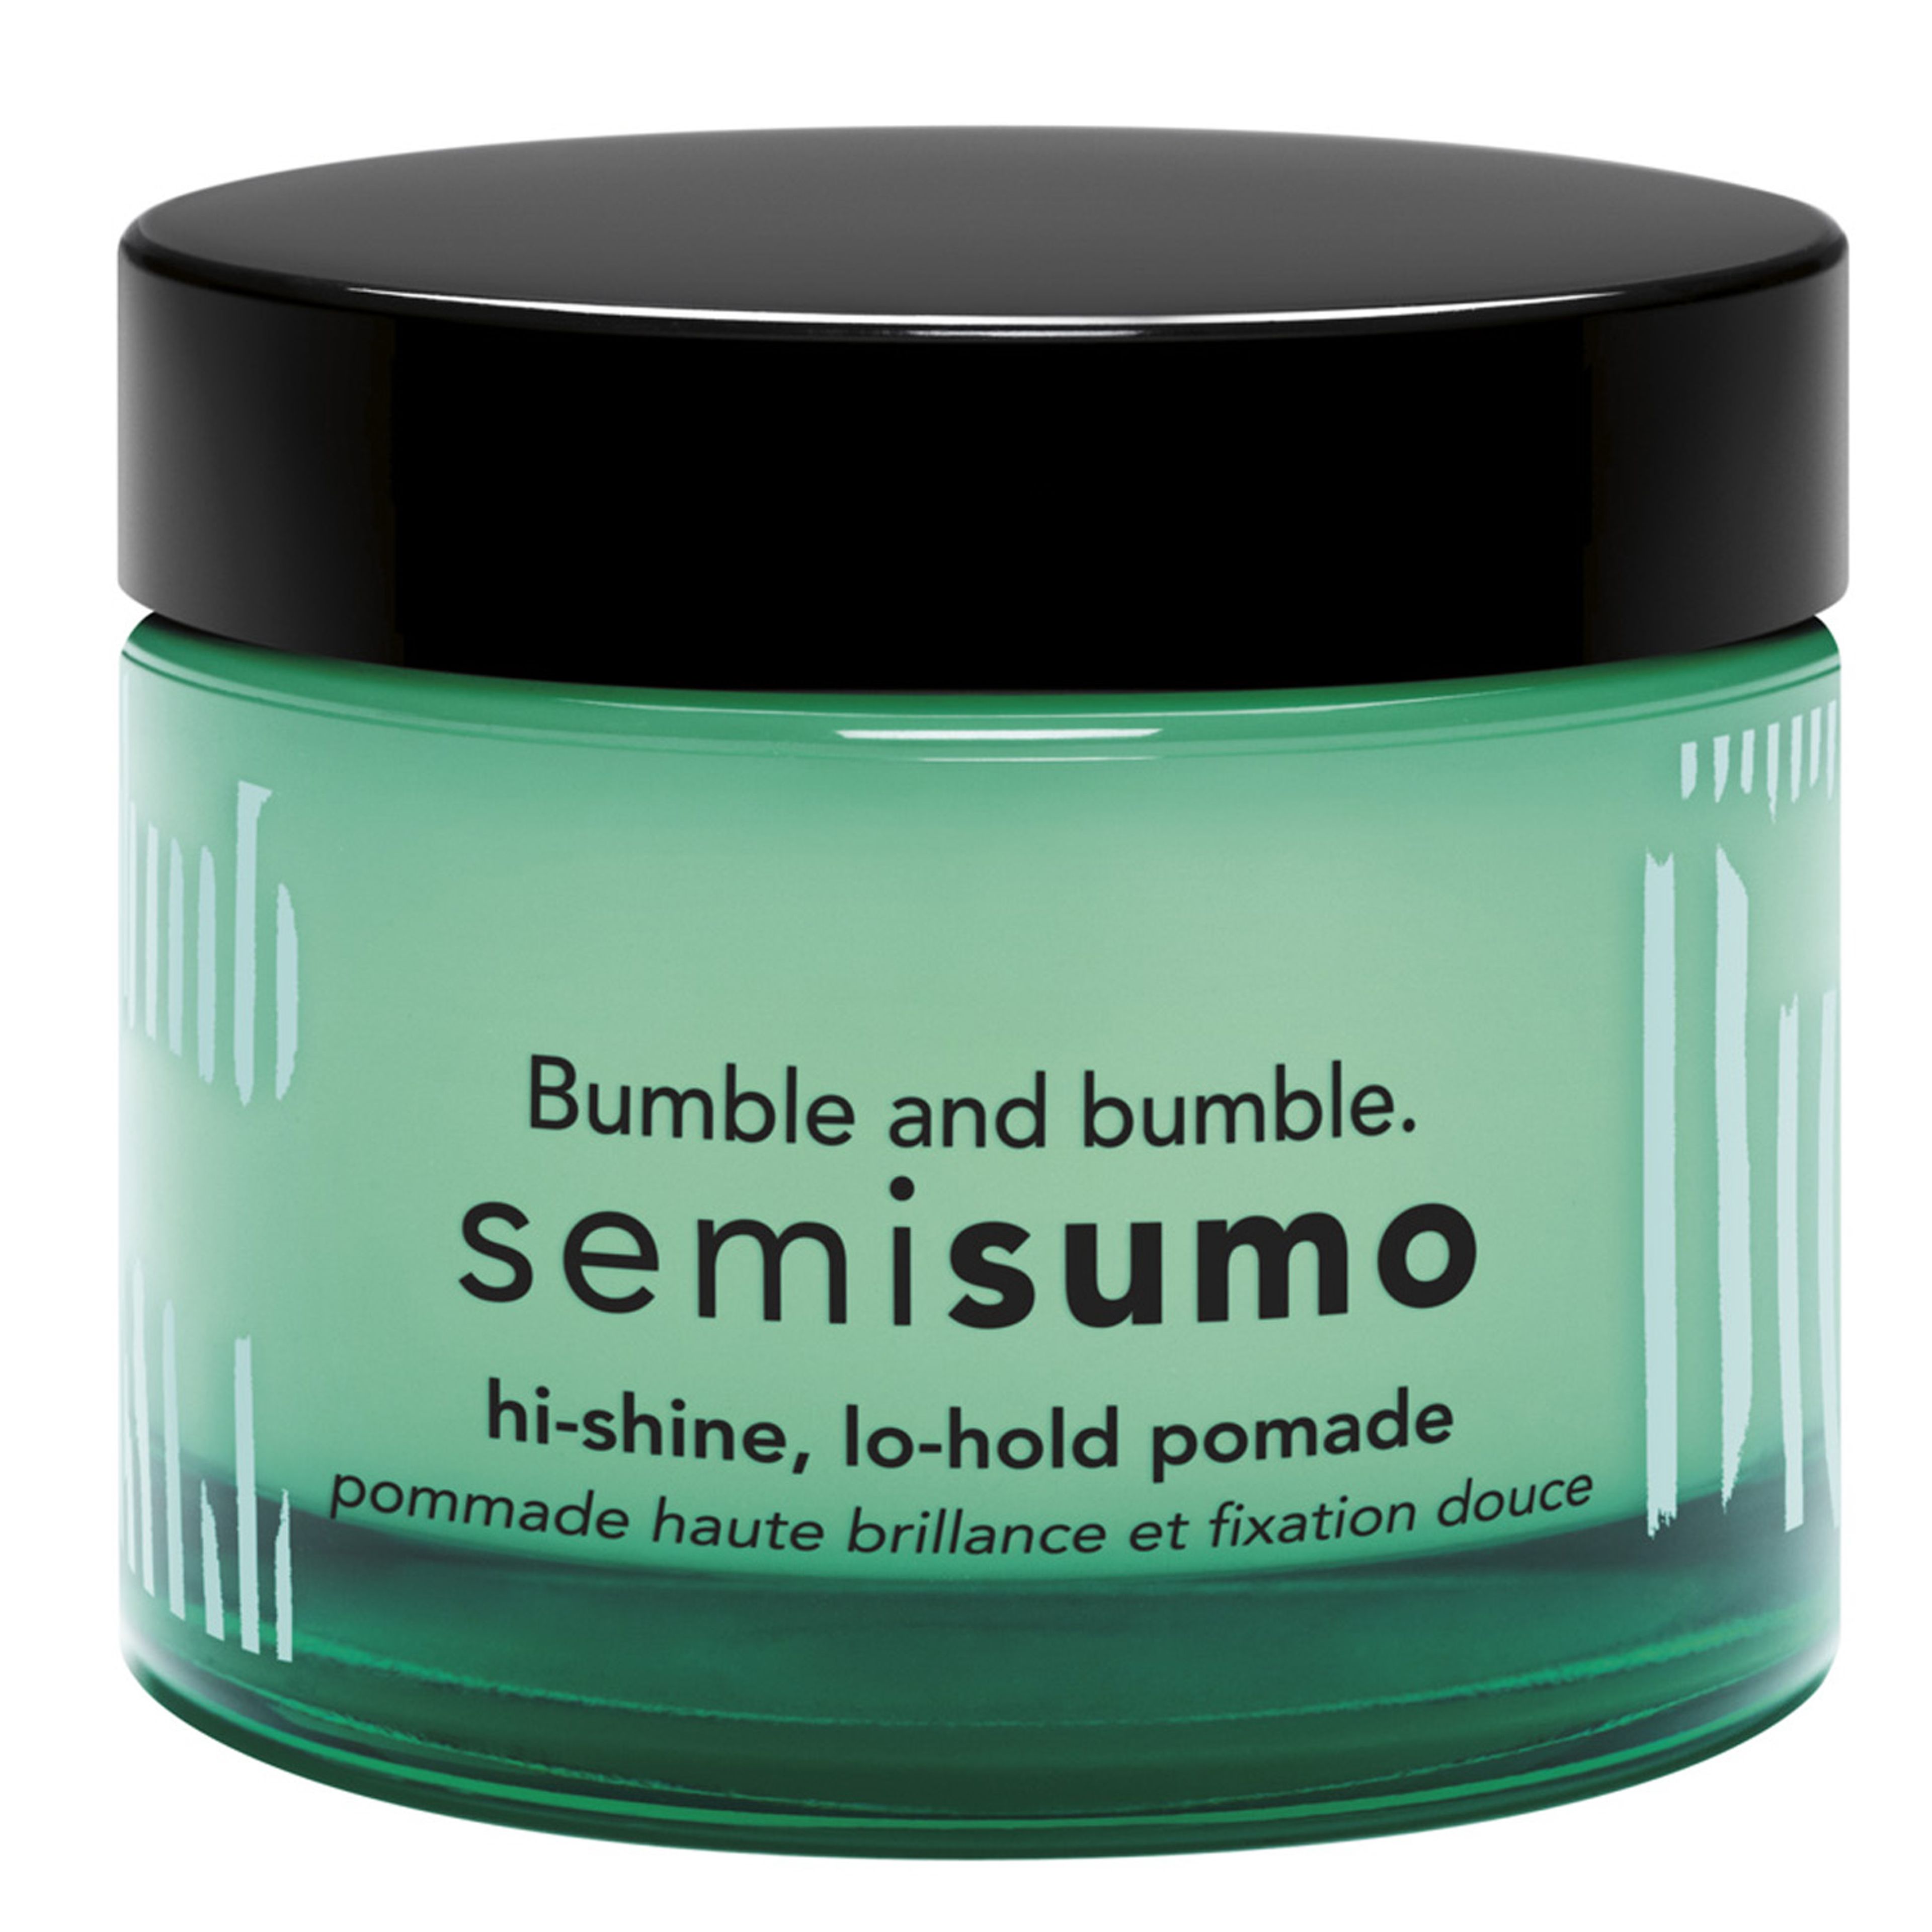 Bumble and bumble Semisumo 1